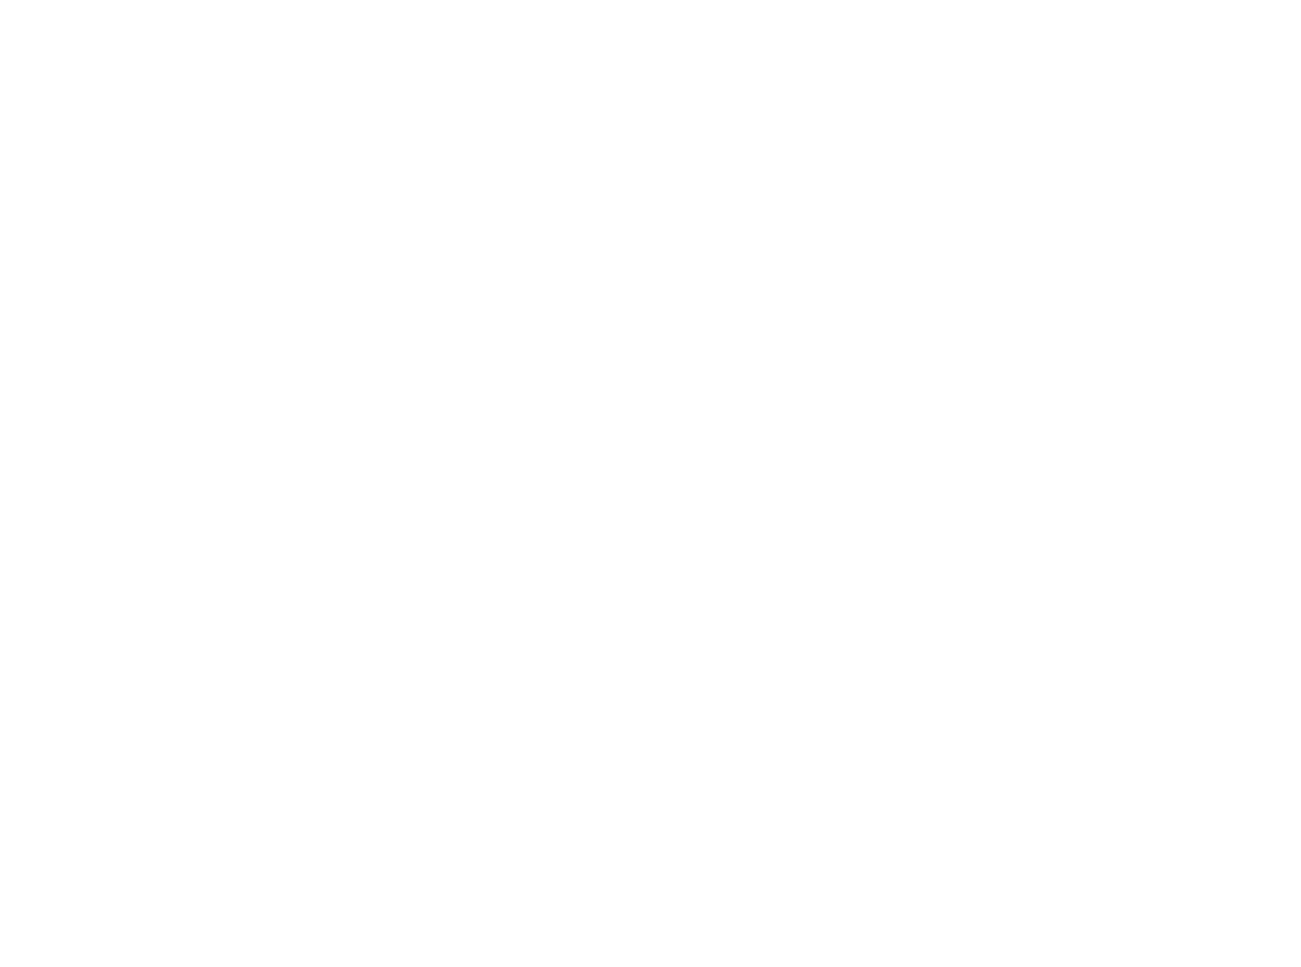 Kirco - KircoManix - Develop. Manage. Build.